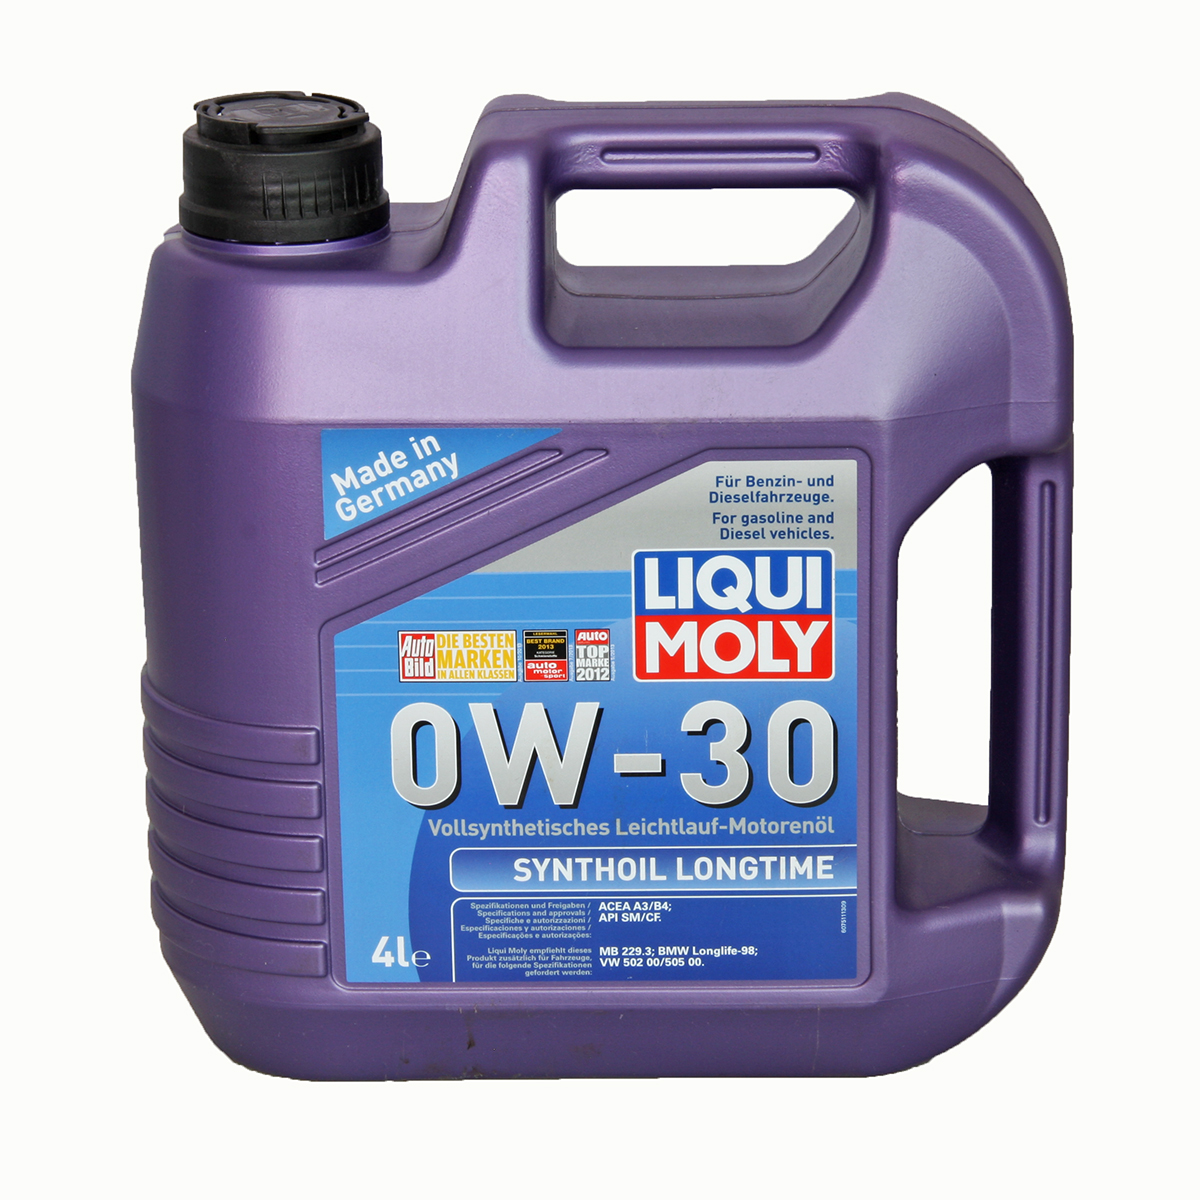 Моторное масло от корпорации liqui moly с маркировкой 0w30 synthoil longtime 0w30: характерные особенности